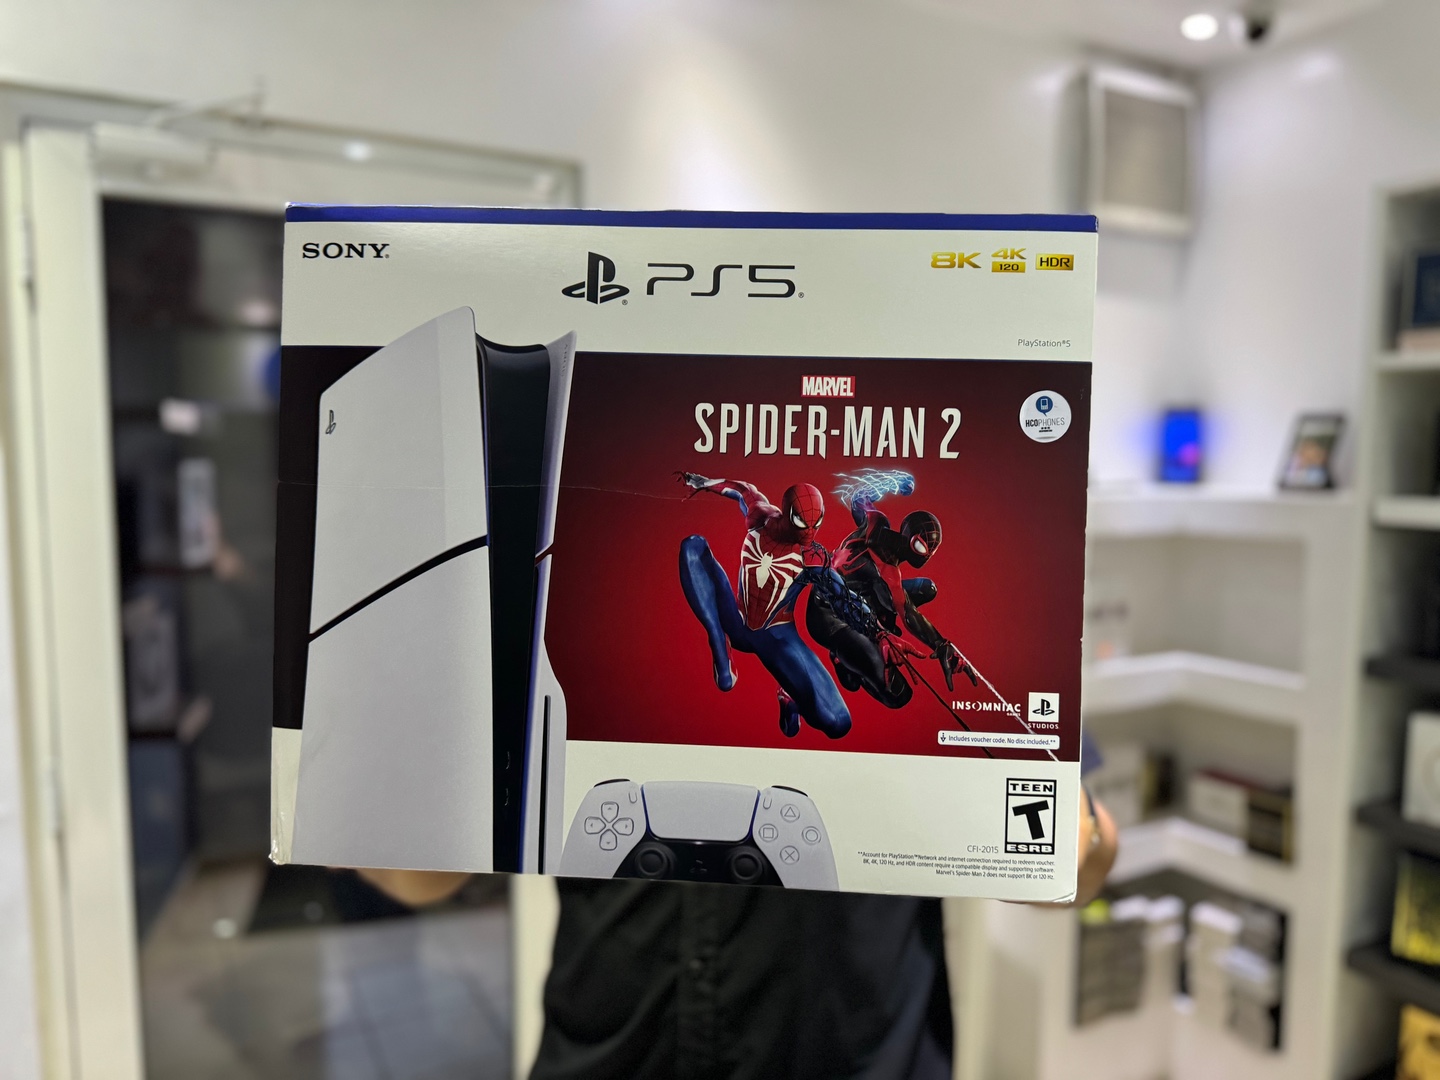 consolas y videojuegos - PlayStation5 SLIM Spider Man 2 Nuevo Sellado Version Disco,$ 36,400 NEG